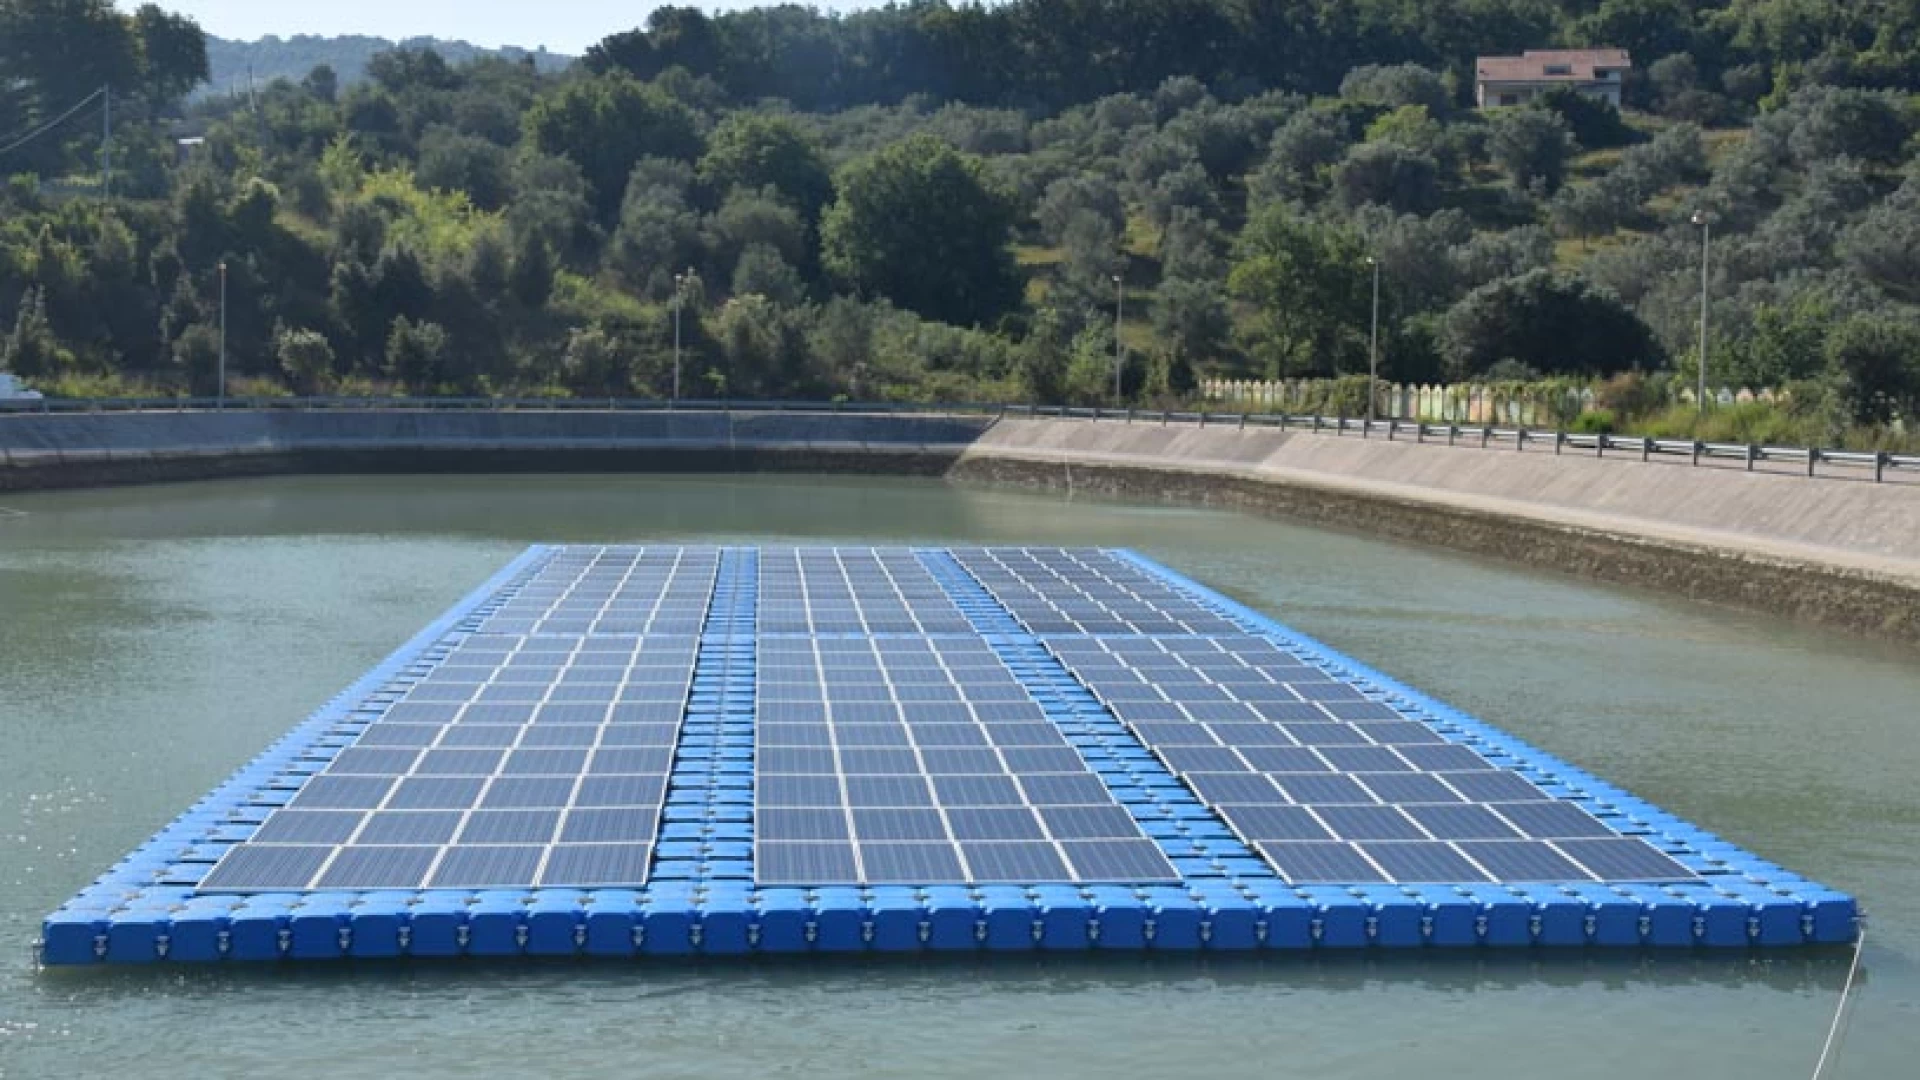 Acqua: Coldiretti Molise, serve uso oculato delle risorse idriche. Fotovoltaico galleggiante per produrre energia senza utilizzare suolo coltivabile.